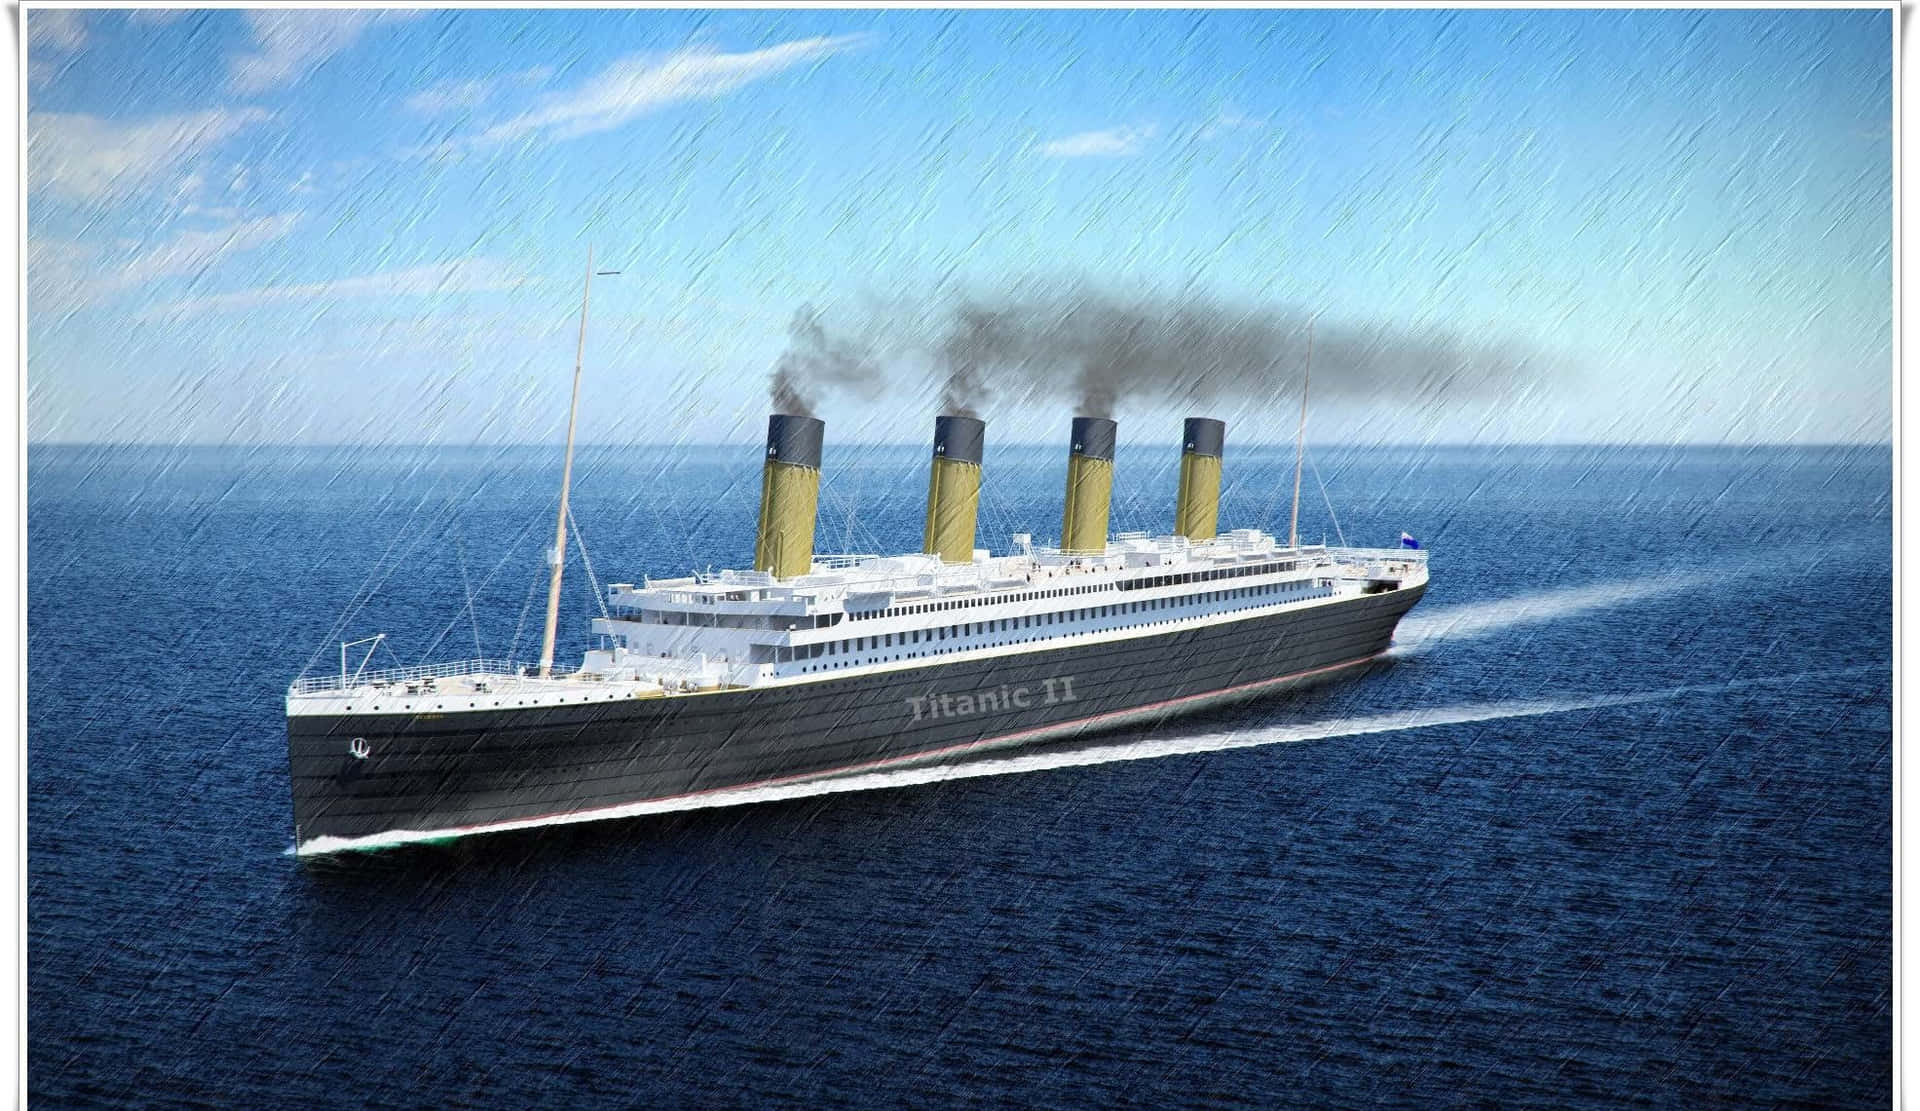 Elhundimiento Del Titanic En Las Profundidades.